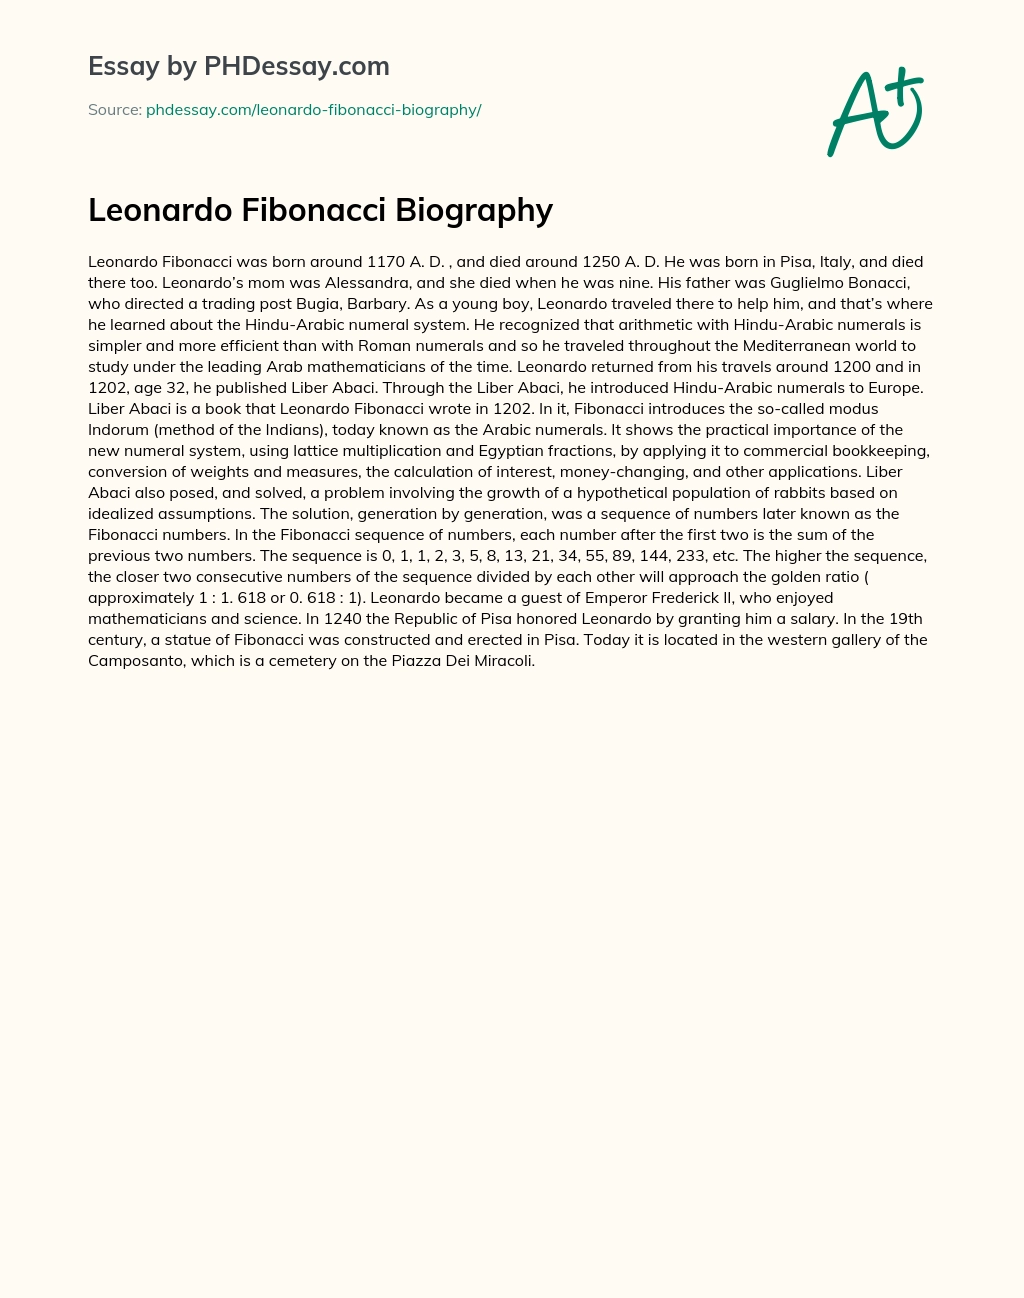 Leonardo Fibonacci Biography essay